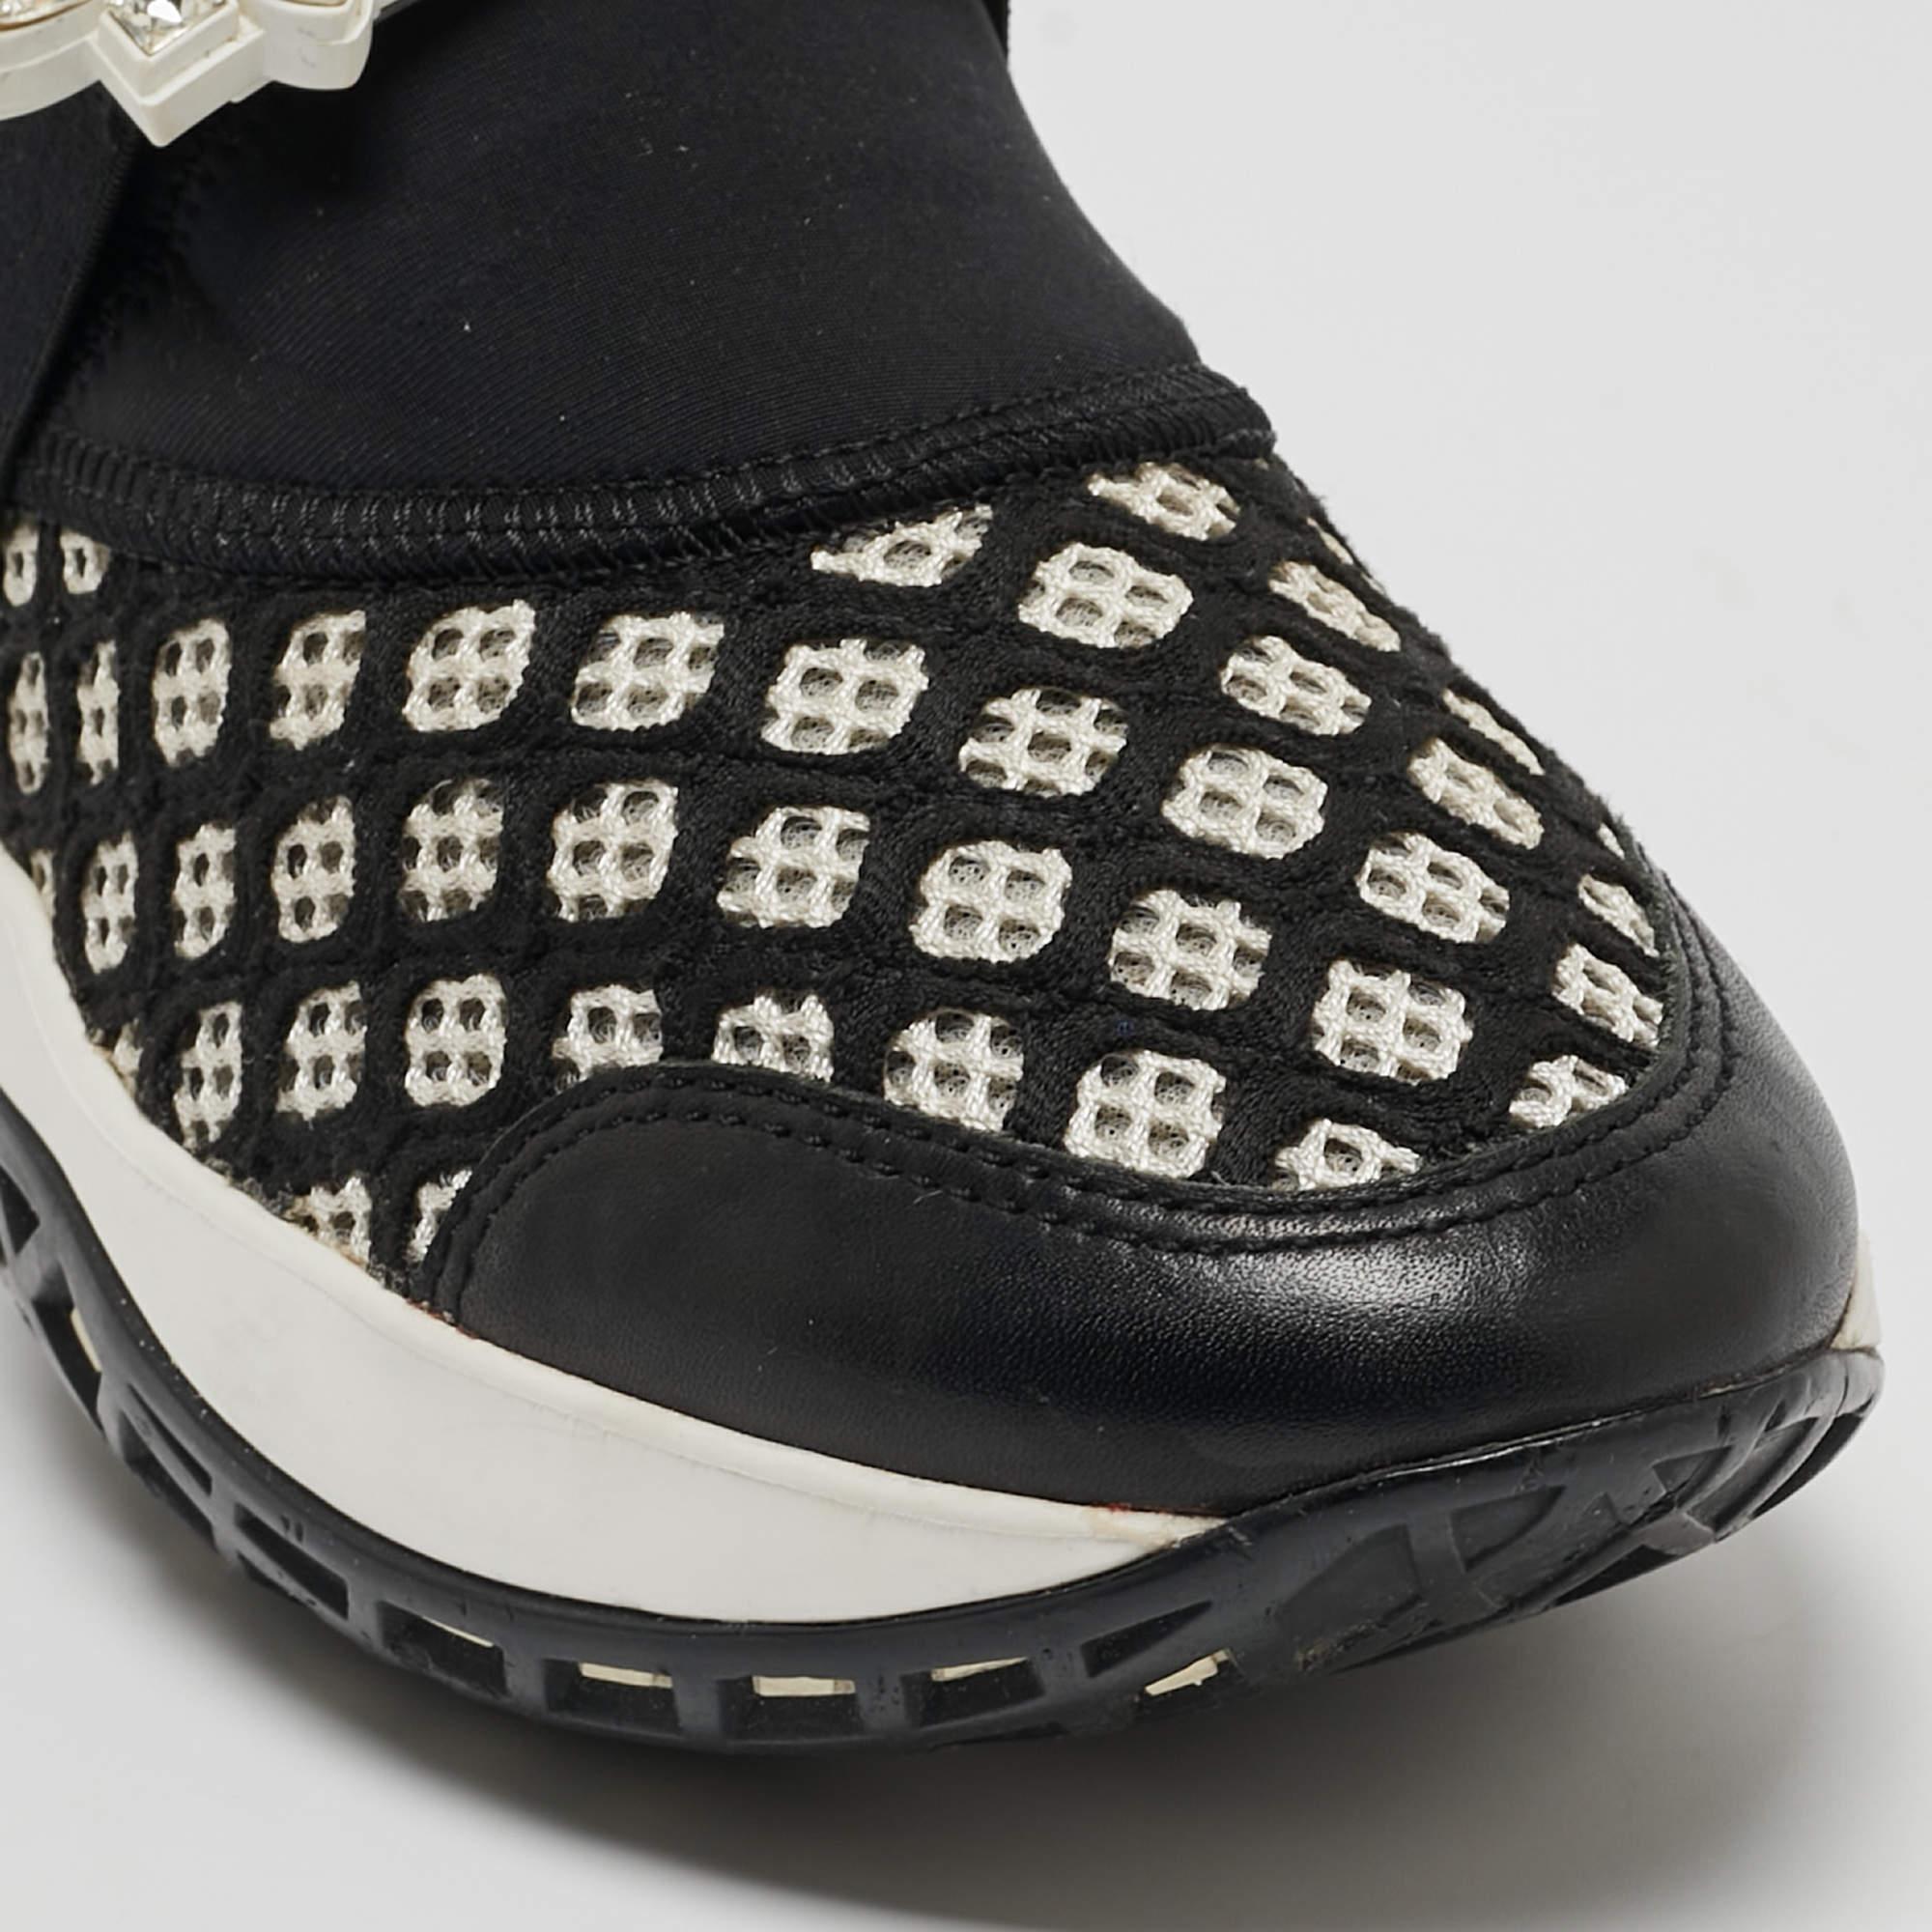 Roger Vivier Black/White Mesh and Neoprene Viv Run Strass Sneakers Size 35 For Sale 3